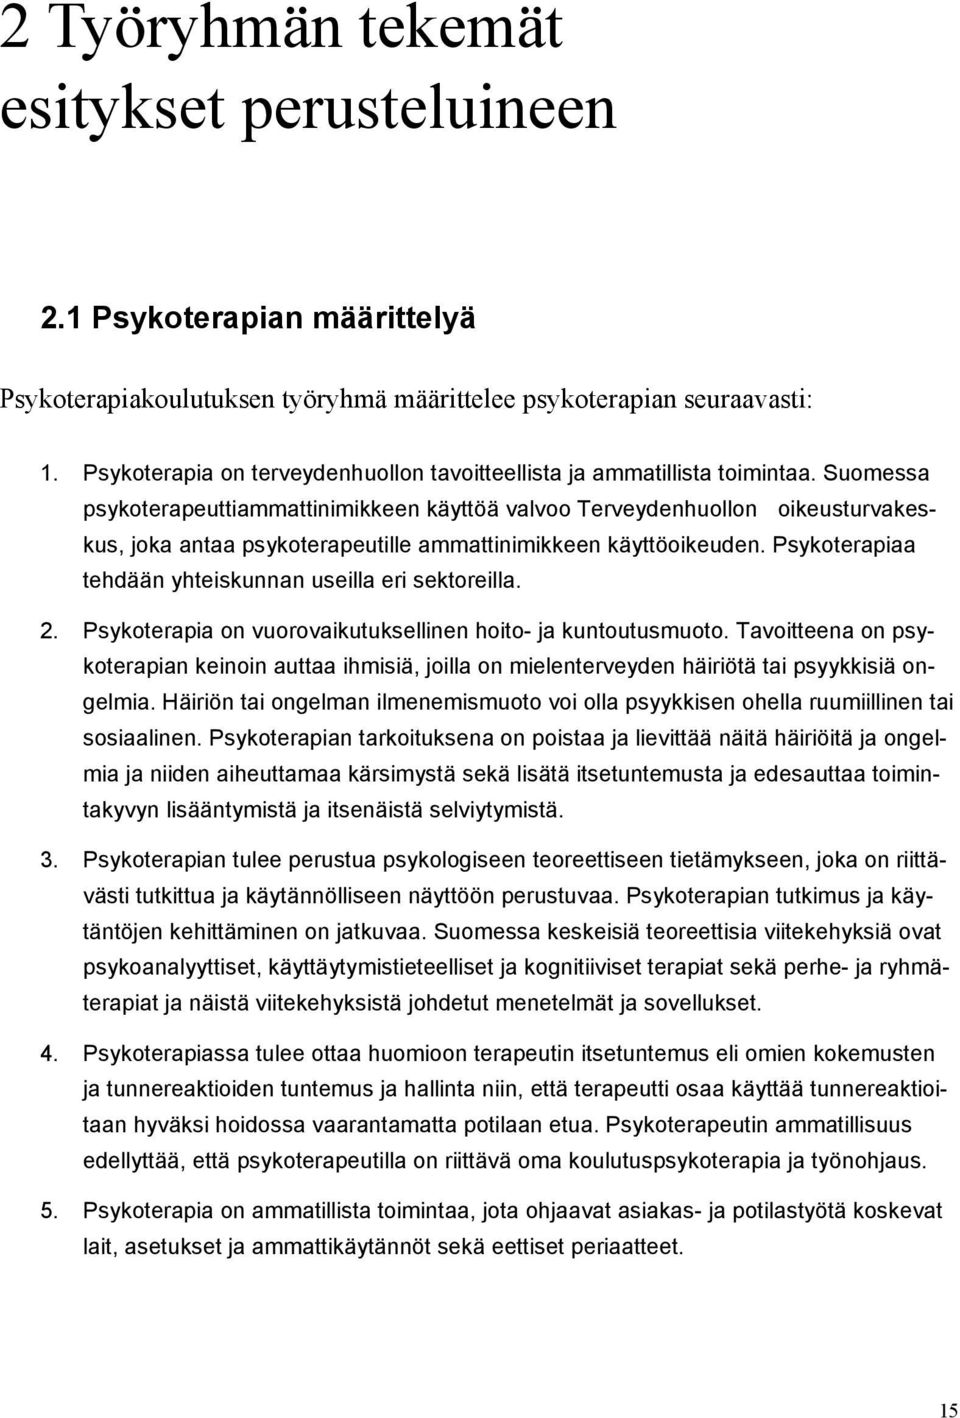 Suomessa psykoterapeuttiammattinimikkeen käyttöä valvoo Terveydenhuollon oikeusturvakeskus, joka antaa psykoterapeutille ammattinimikkeen käyttöoikeuden.